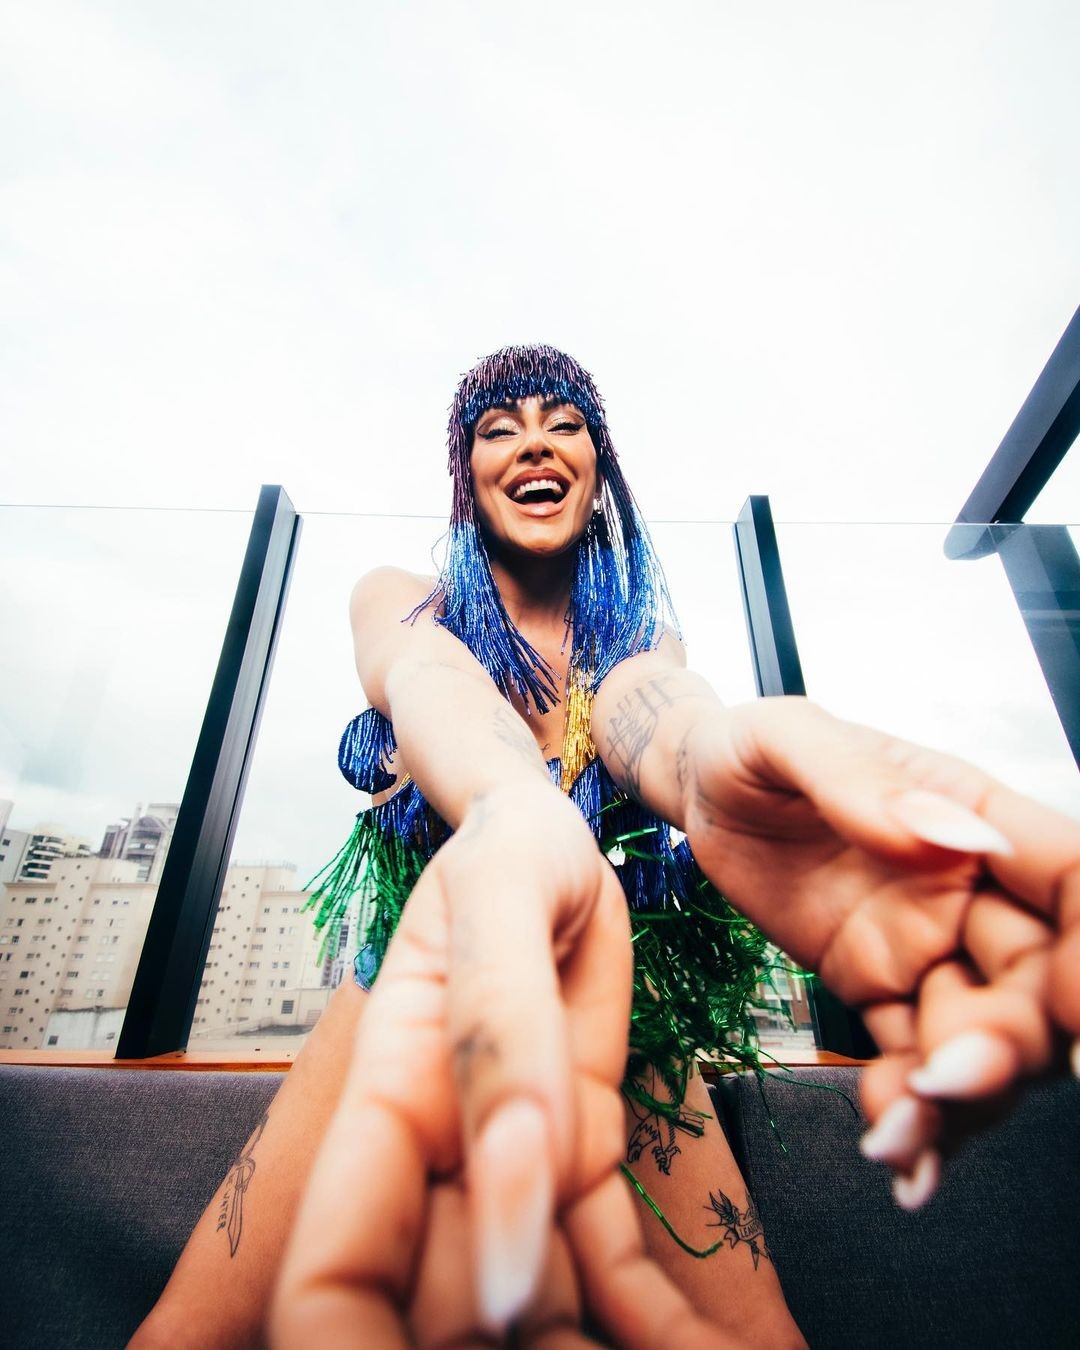 Cleo arrasa em look de carnaval com franja e hot pants (Foto: Reprodução / Instagram)